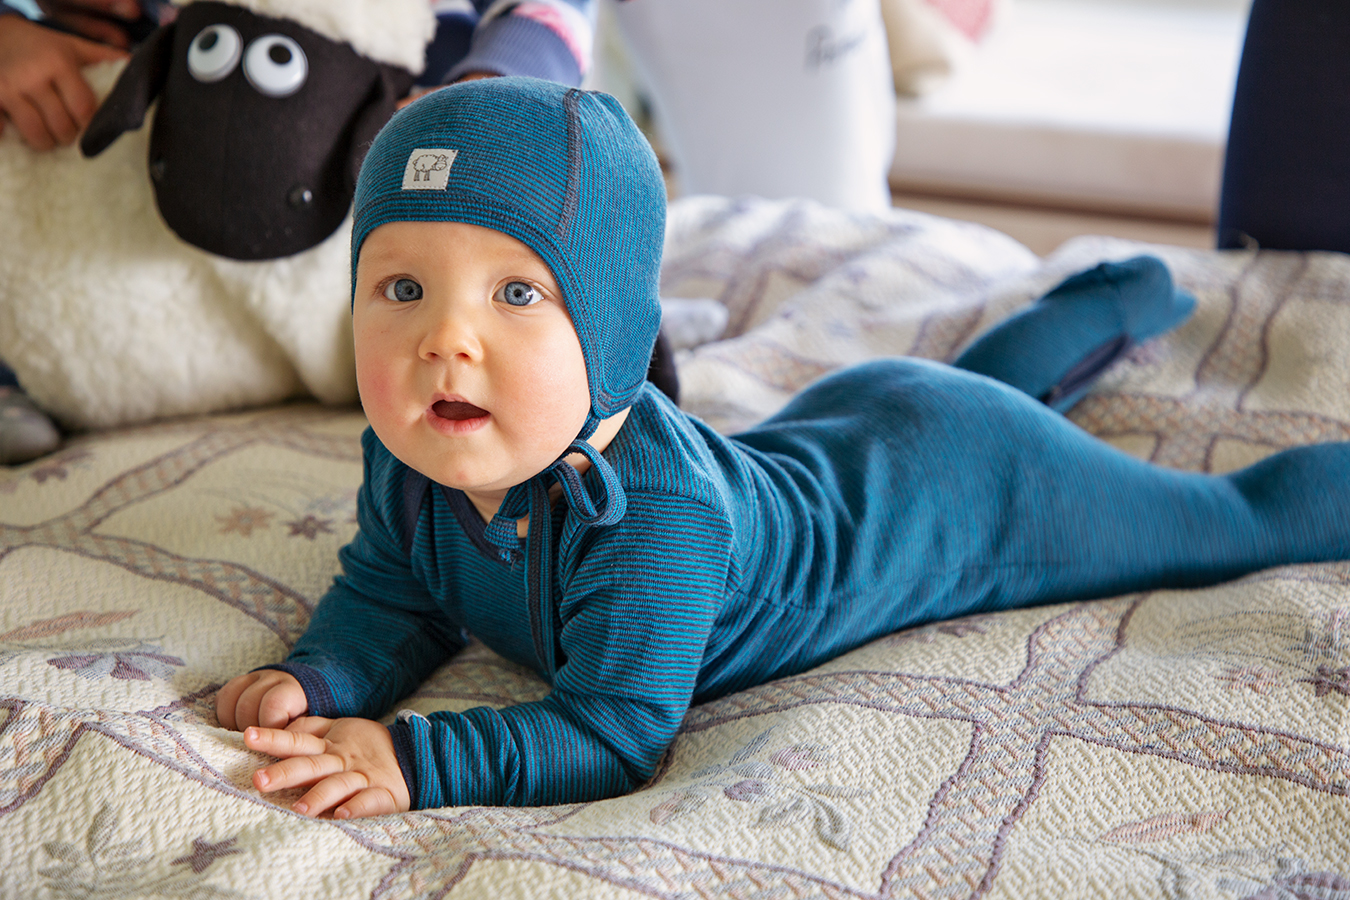 Комбинезон для малышей, цвет синий в полоску , цвет: Голубой в полоскукупить в Москве в интернет-магазине Dilling.ru